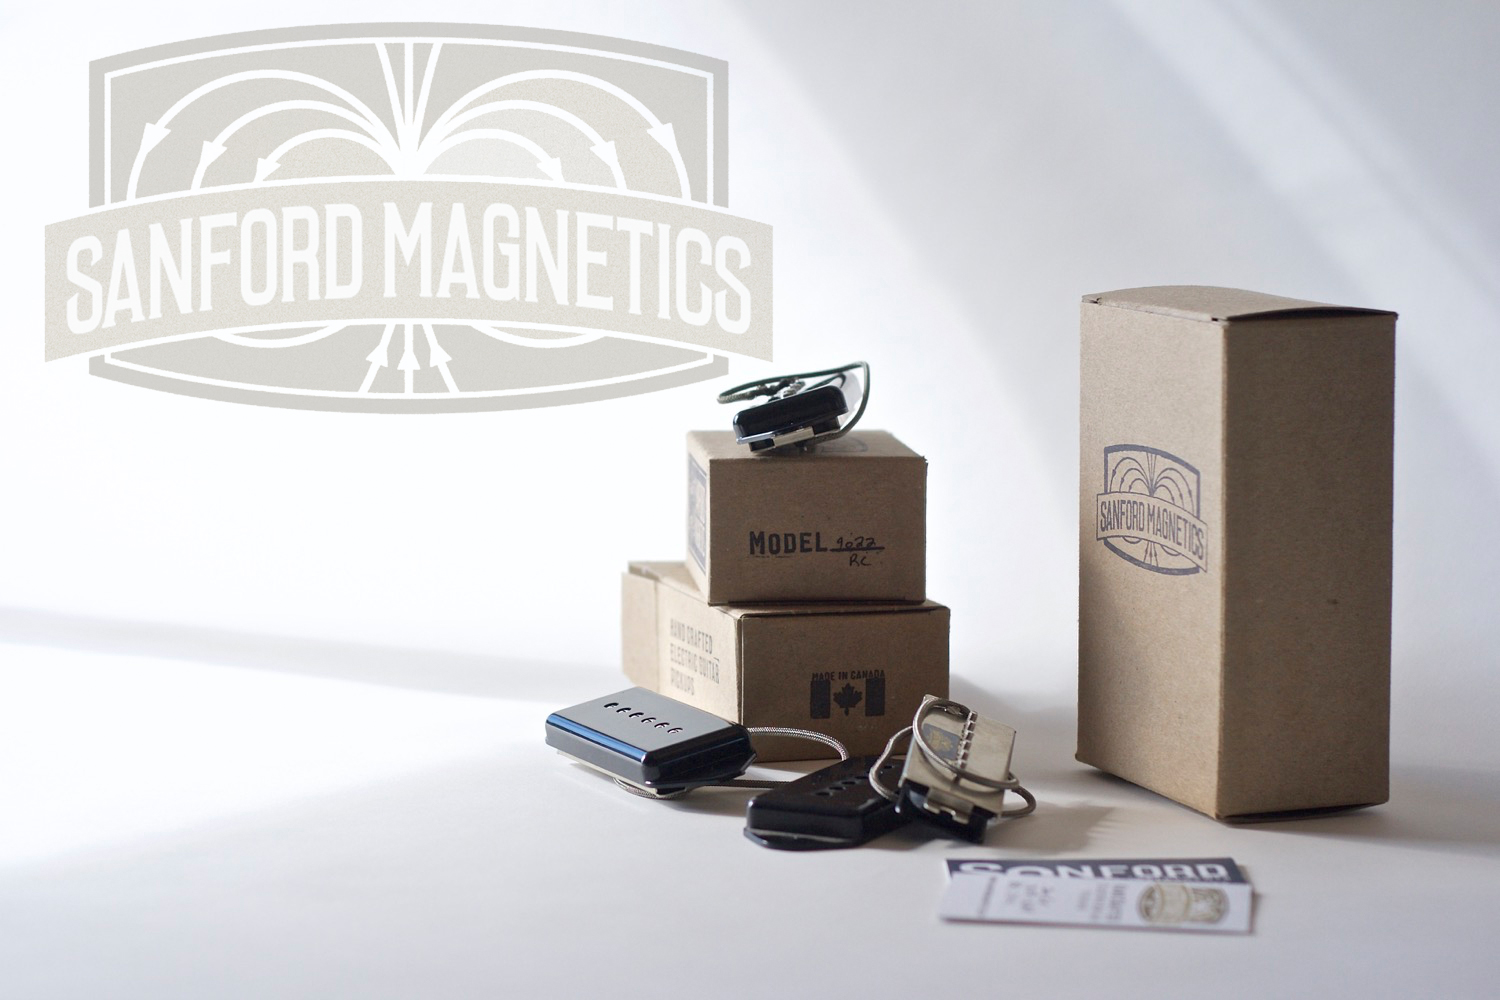 Sanford Magnetics46.jpg